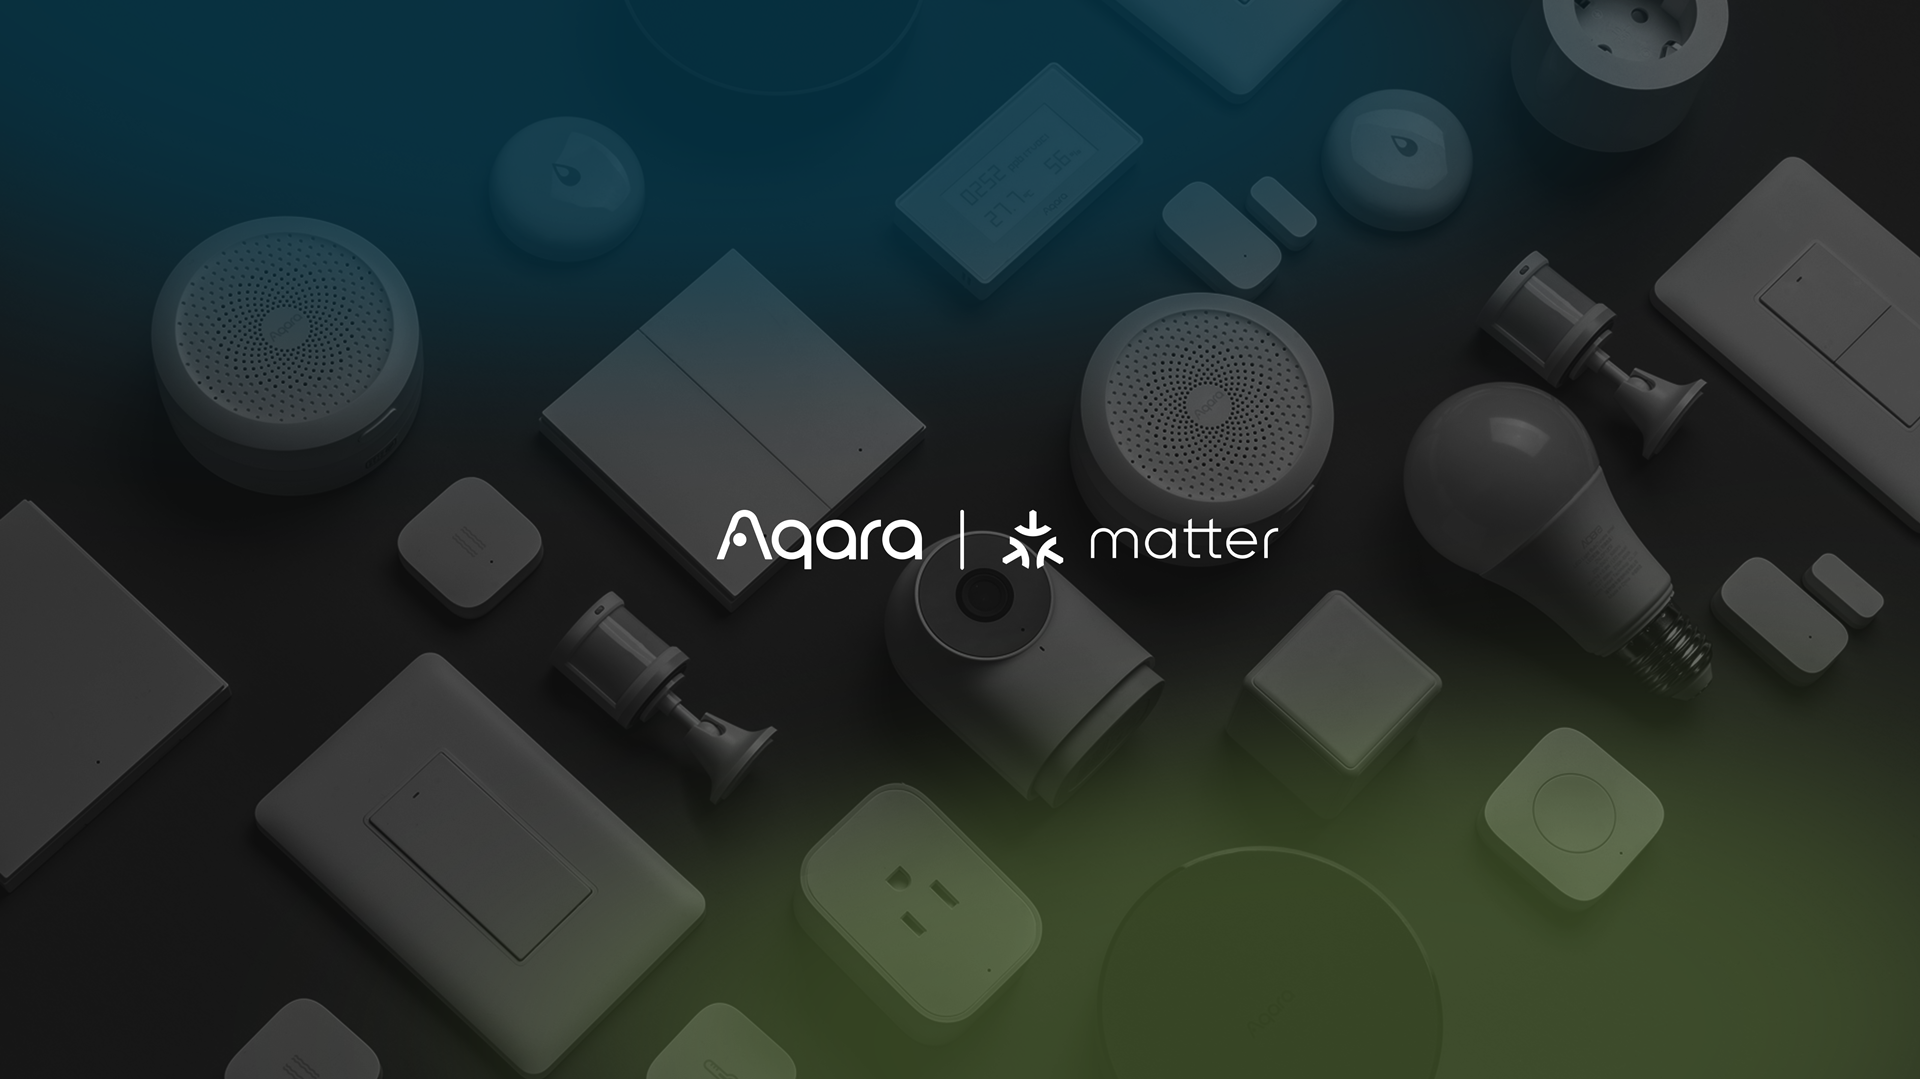 Aqara joins Matter wireless protocol